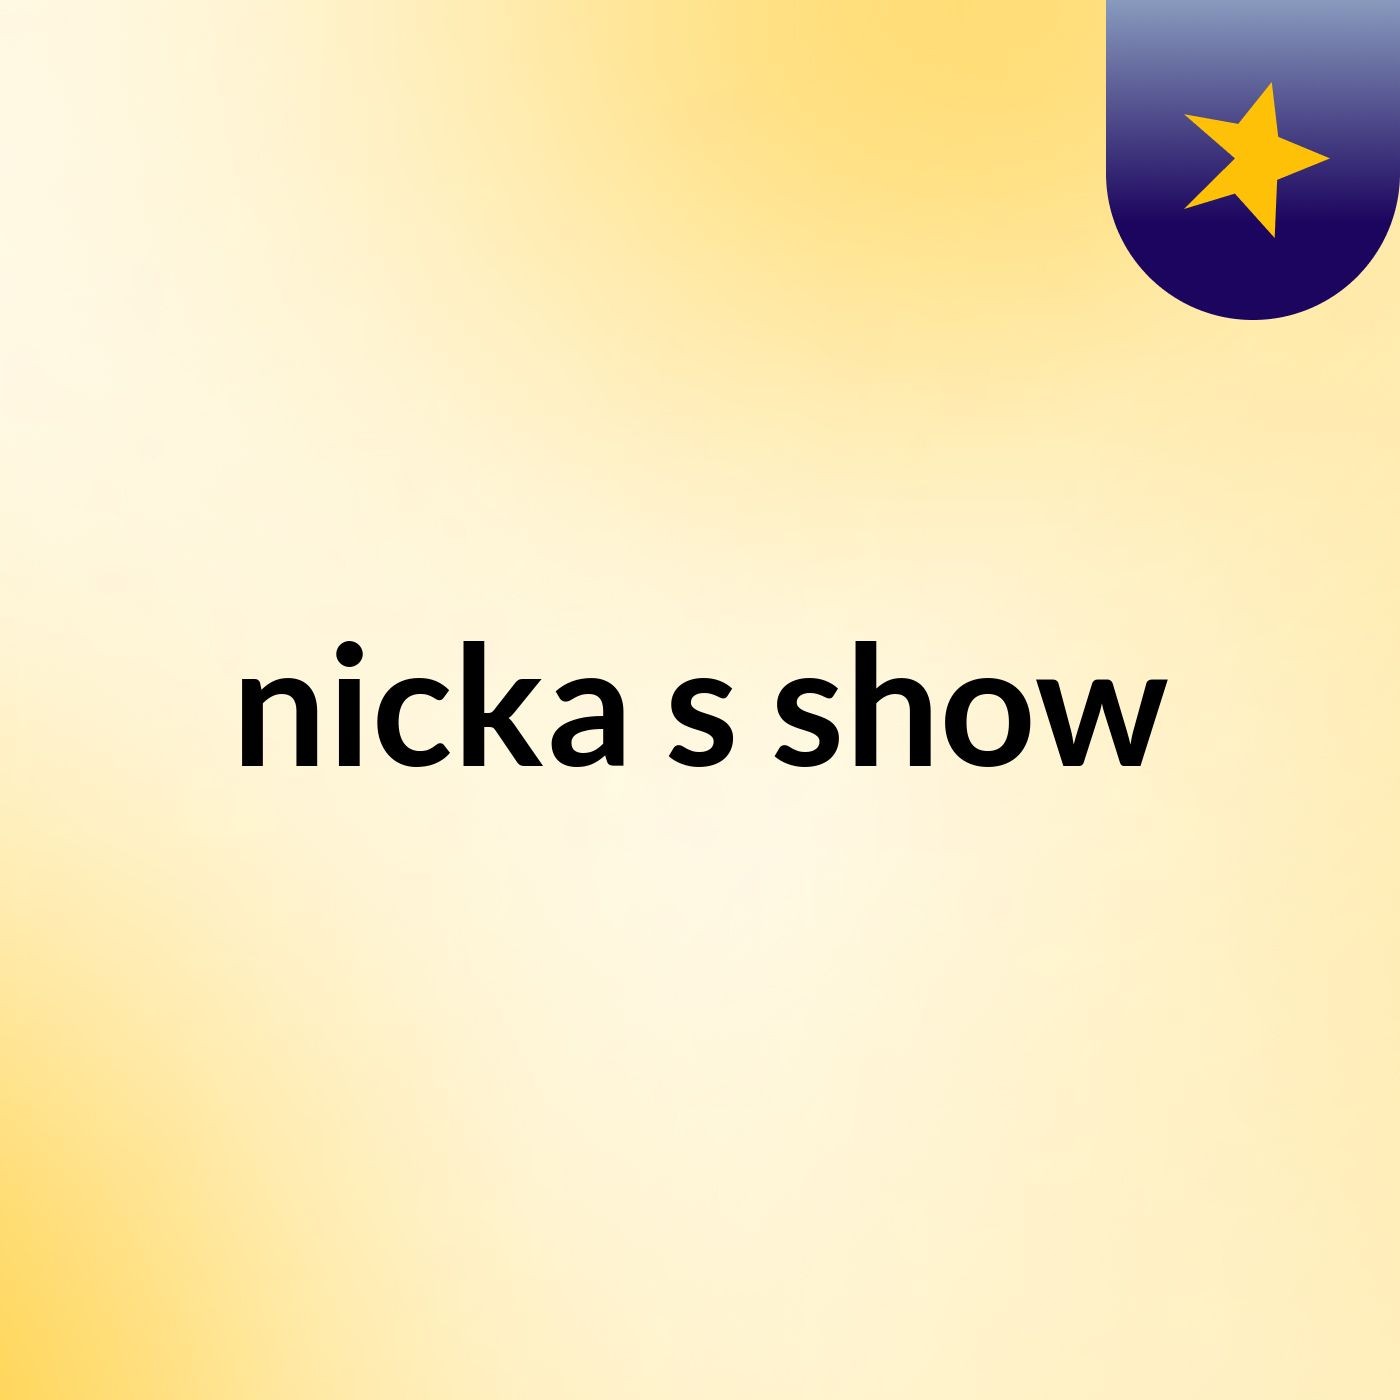 nicka's show